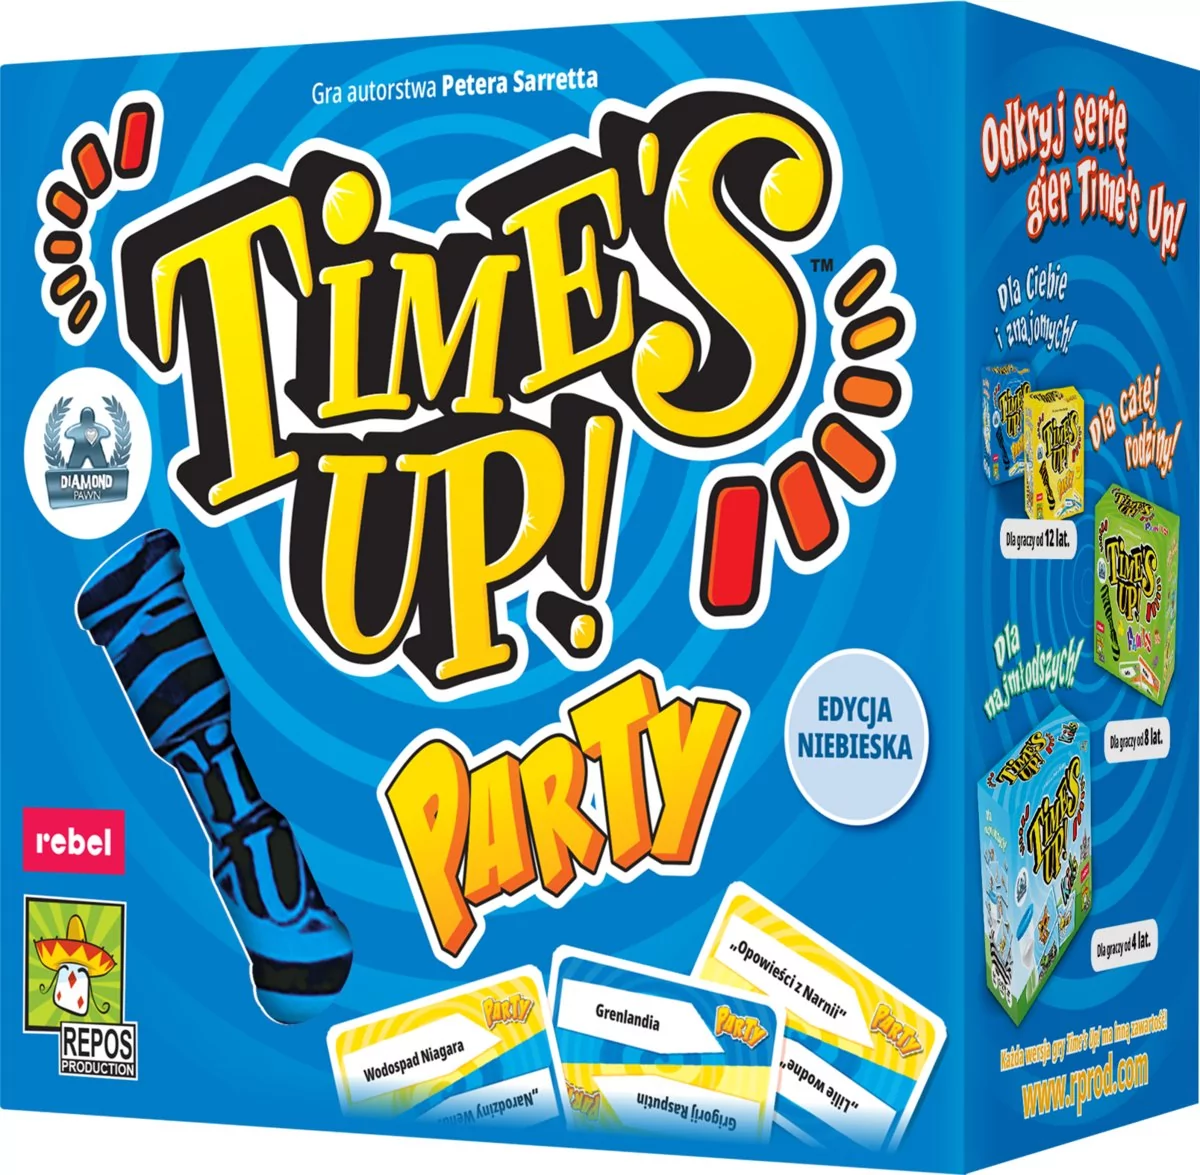 Tmes's Up! Party Edycja Niebieska (PL)